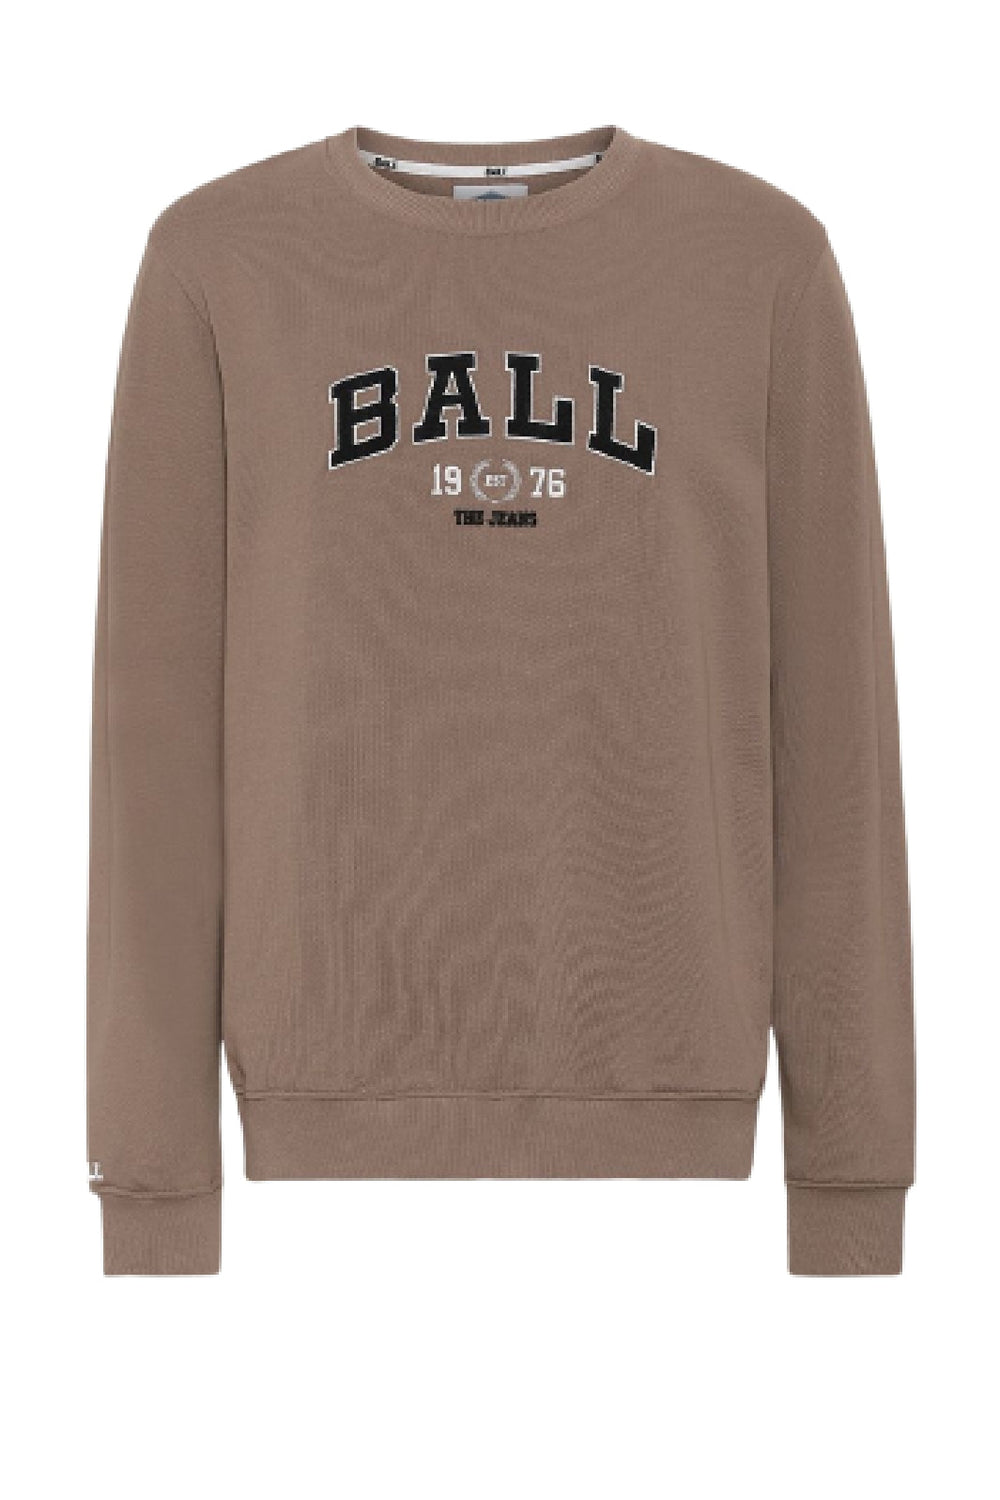 Ball - Sweatshirt L. Taylor - Mokka Sweatshirts 